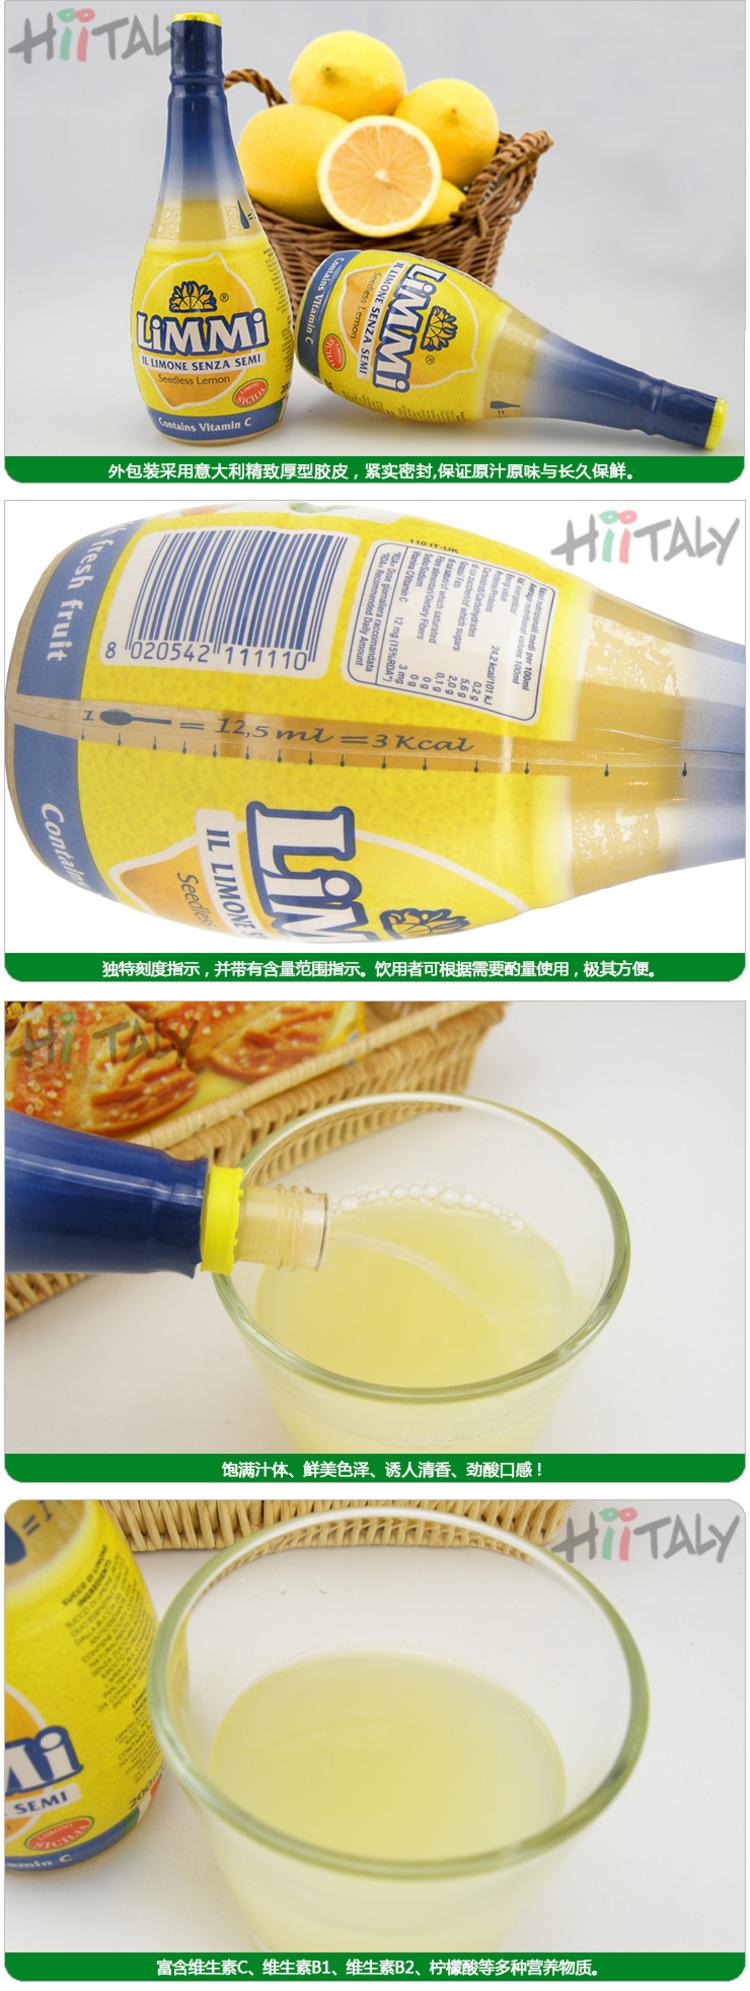 【淘最意大利】LIMMI 丽米浓缩柠檬汁200ml 意大利进口食品